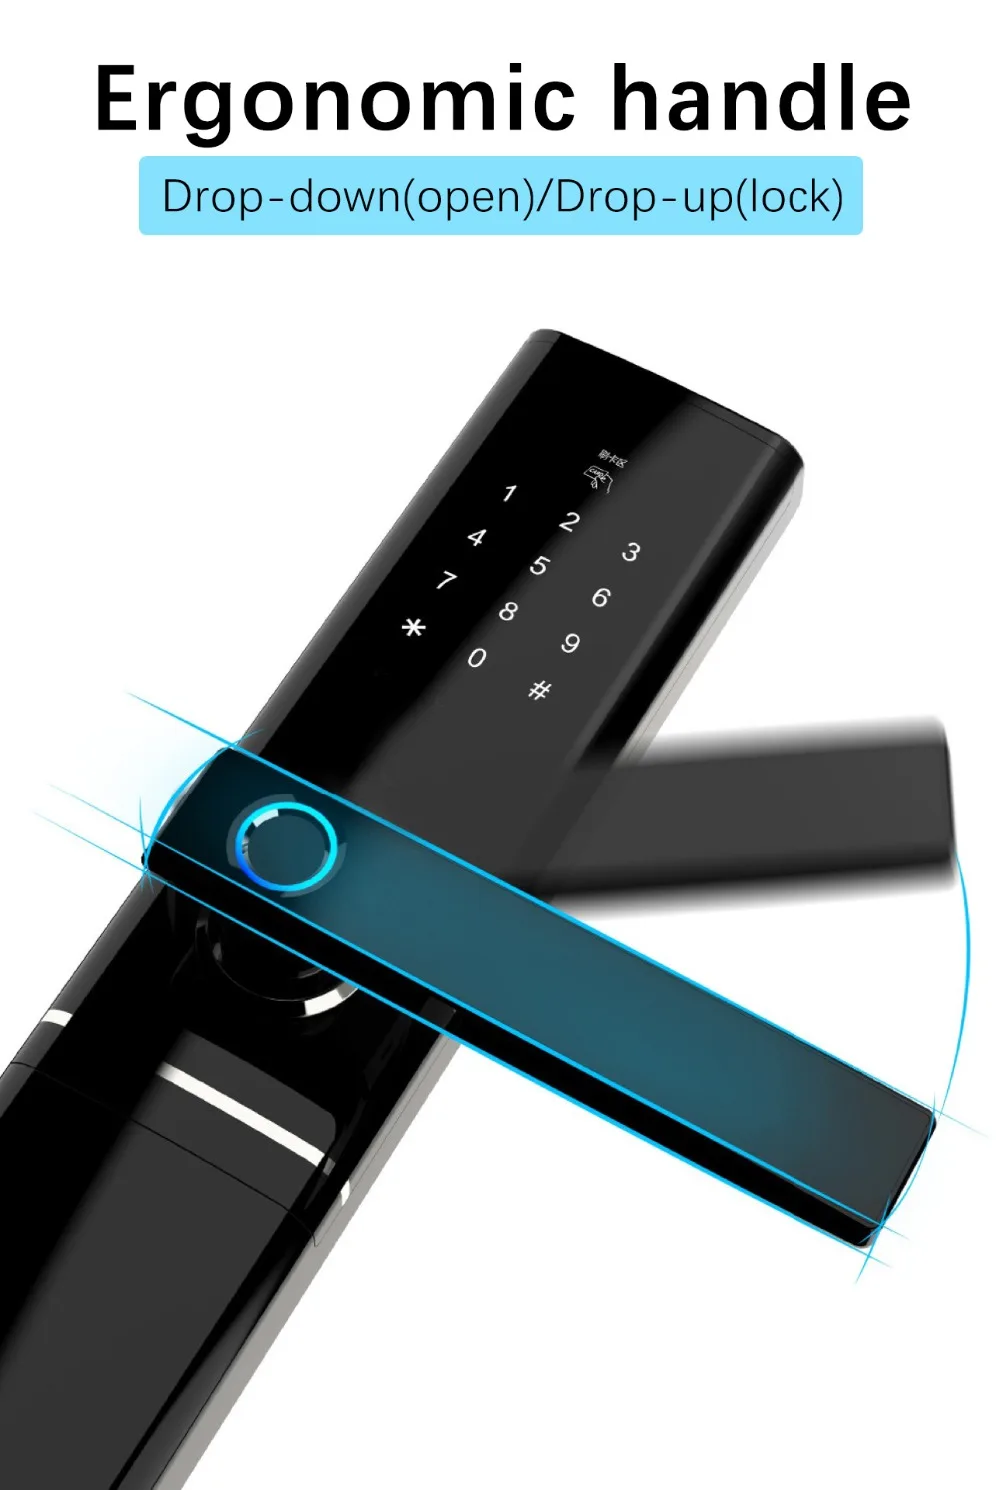 WiFi Fingerprint Door lock, Waterproof Electronic Door Lock Intelligent Biometric Door Lock Smart Fingerprint Lock With App